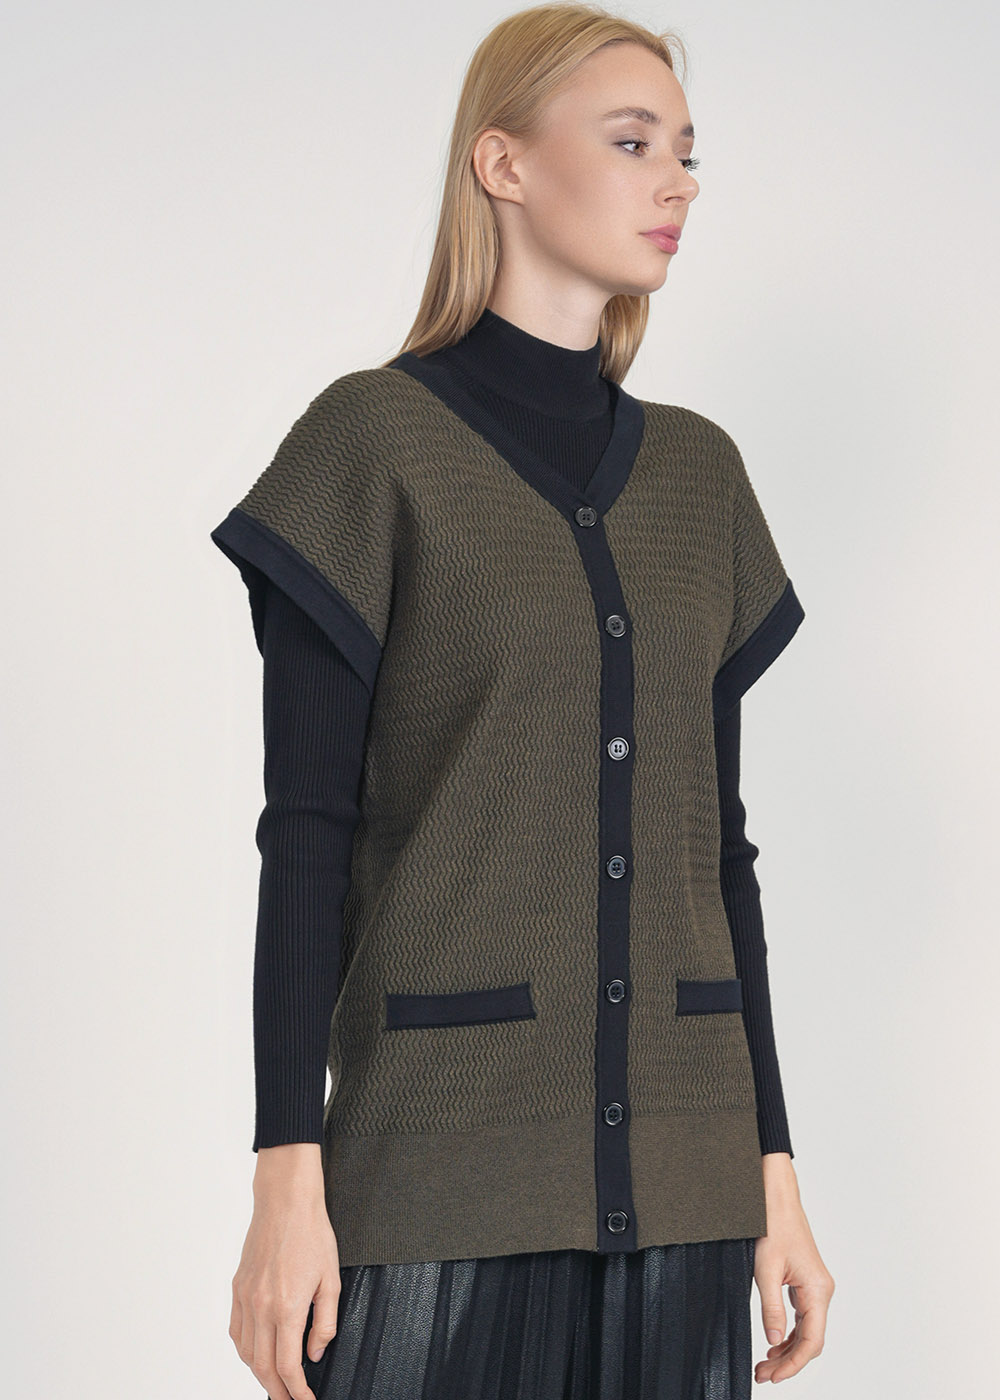 Olive Green Ribbed Vest: Buttoned Elegance